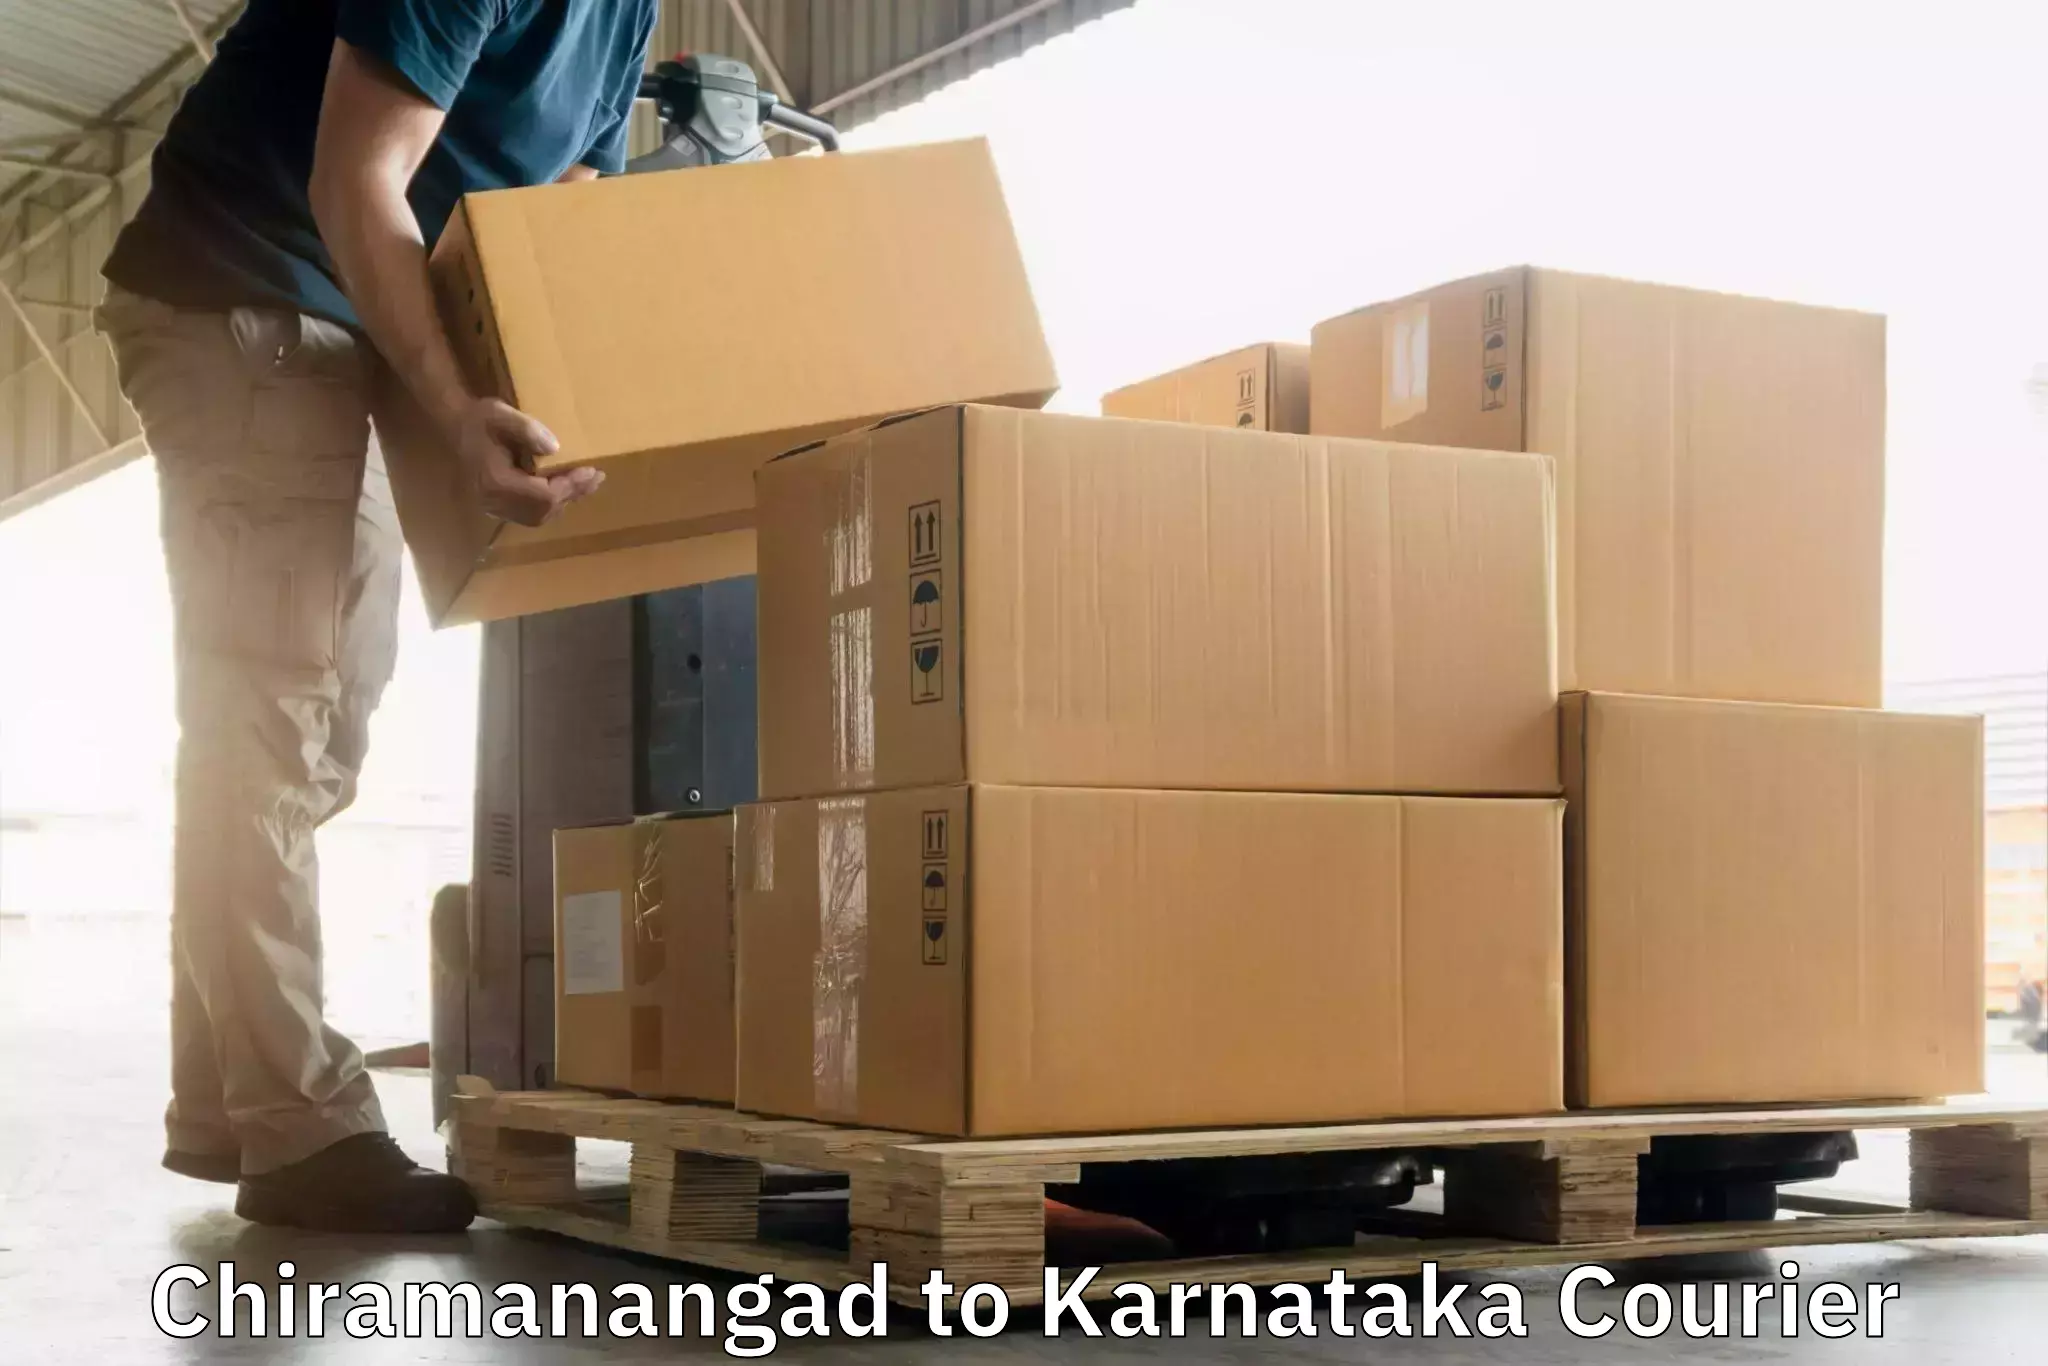 Lightweight courier Chiramanangad to Bengaluru